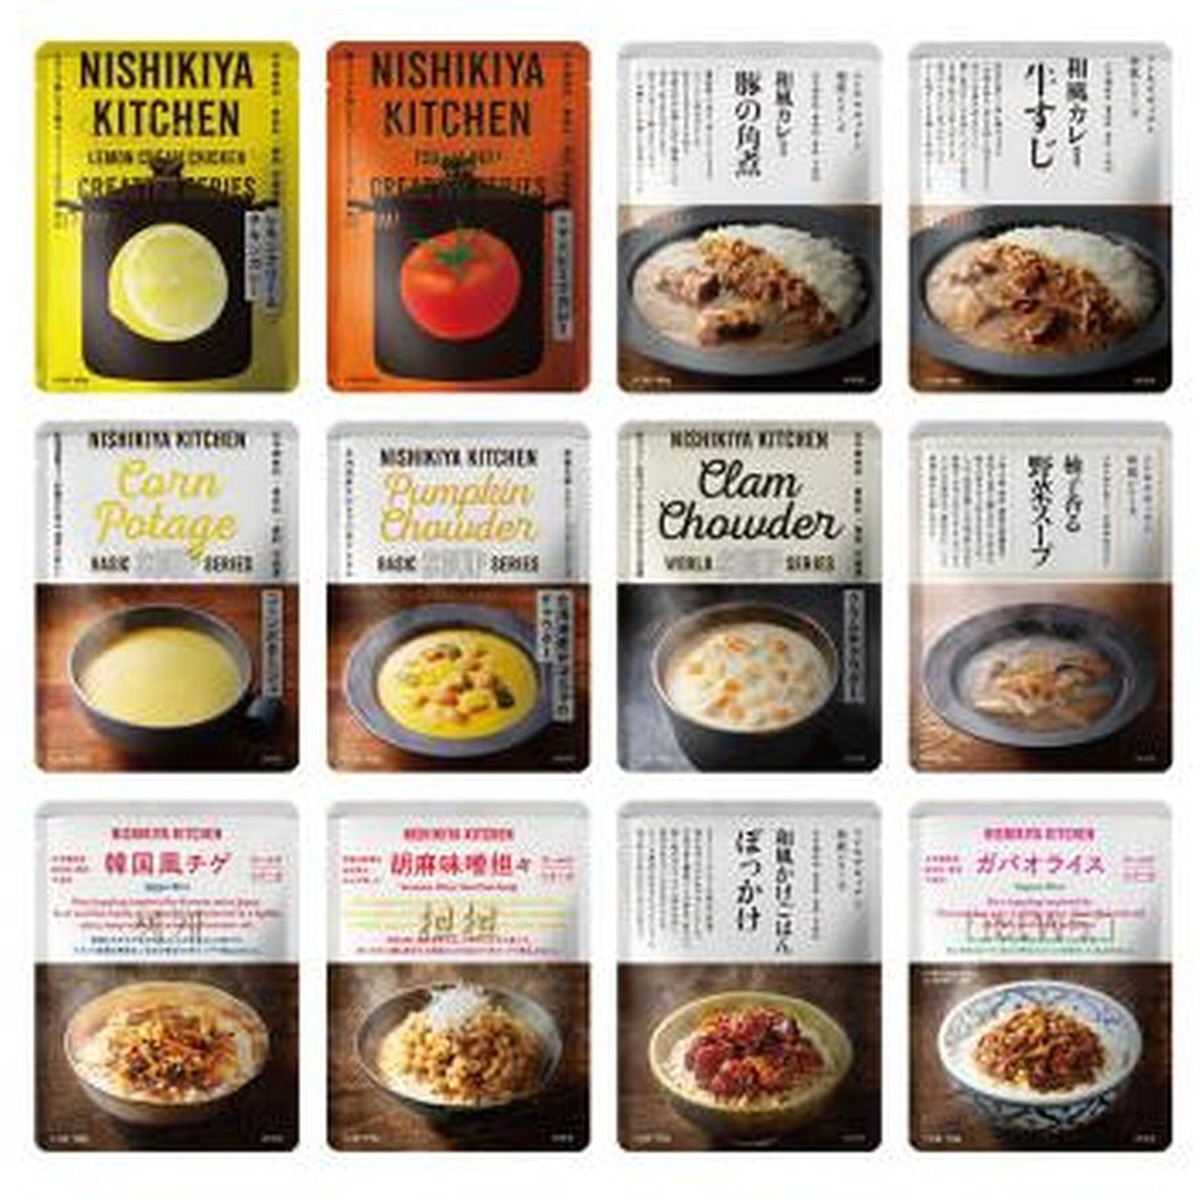 NISHIKIYA KITCHENアソート(12種)12食セット